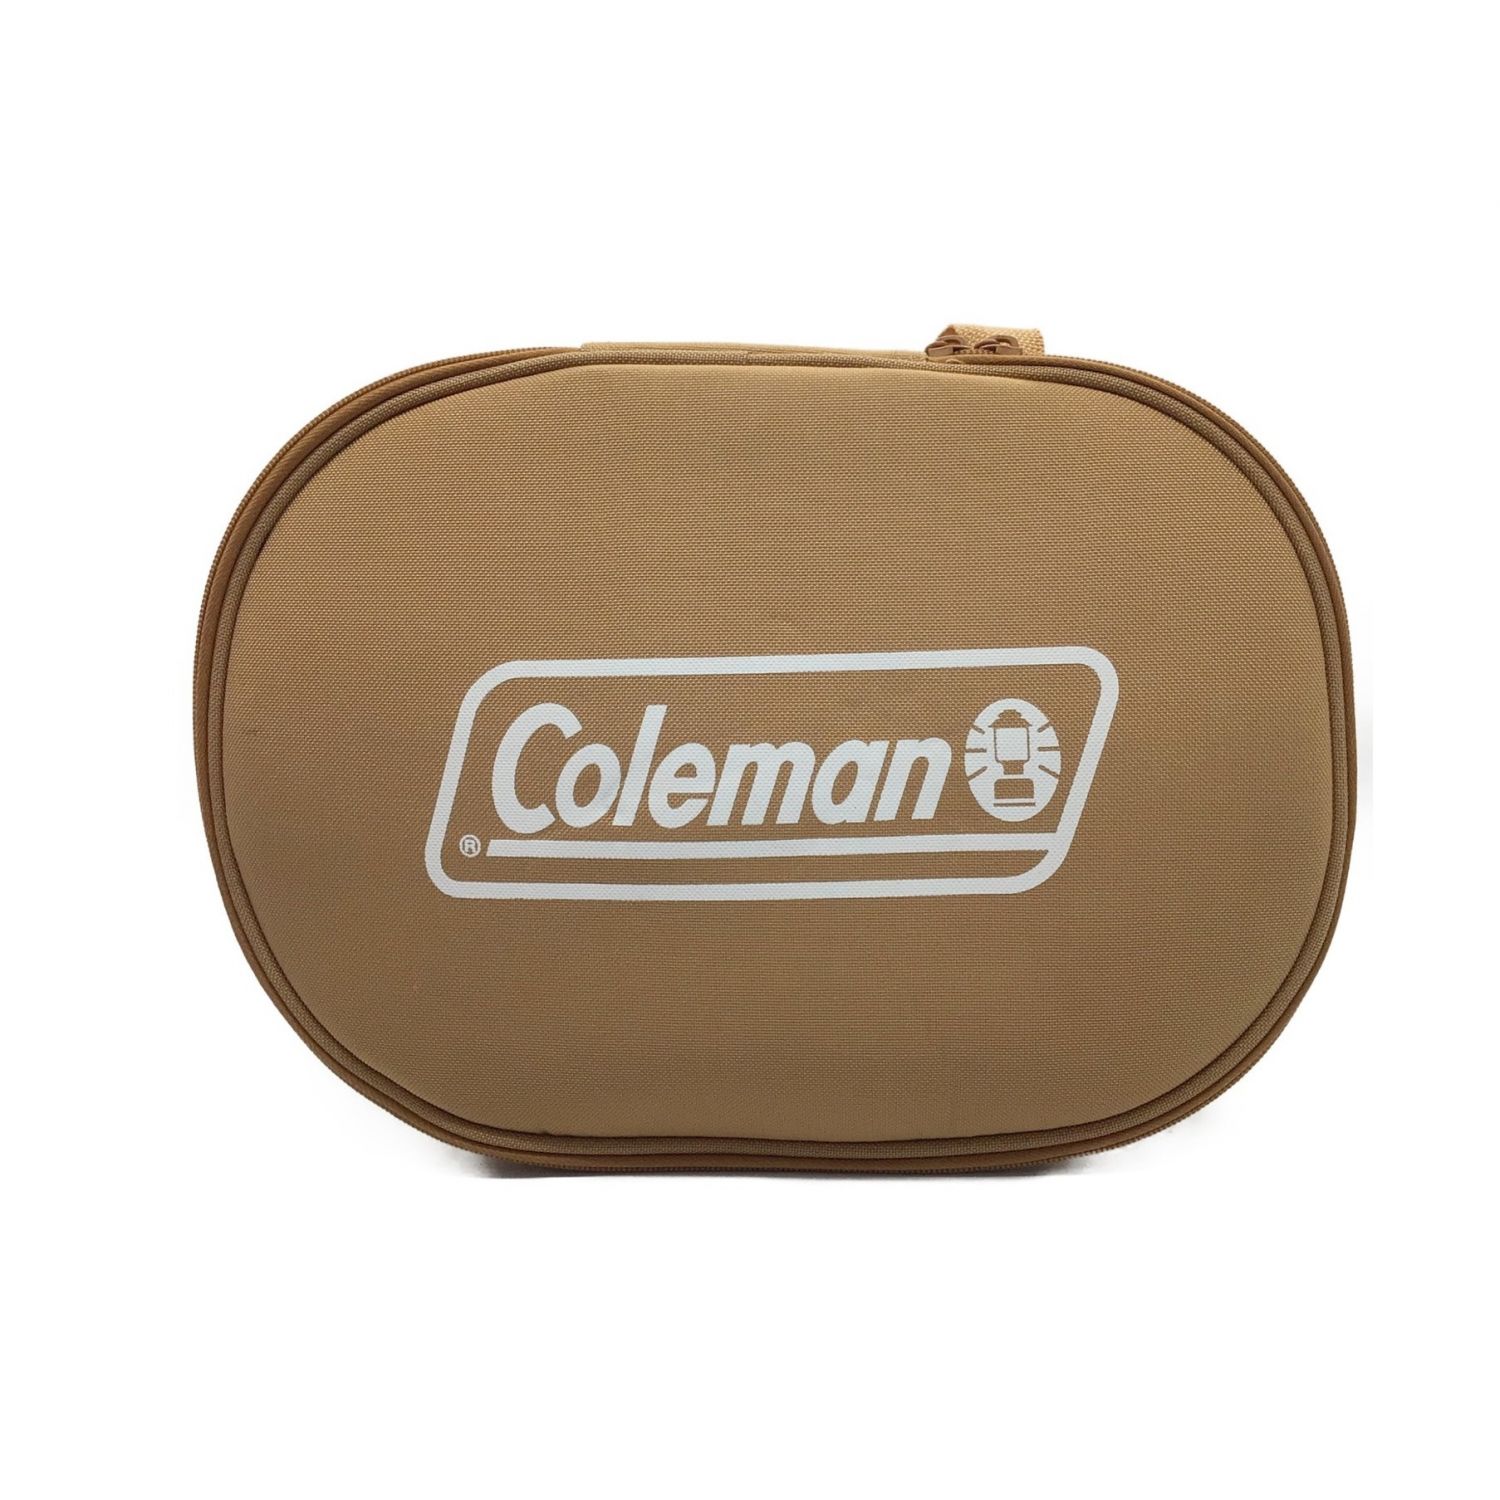 Coleman (コールマン) 8インチエナメルクッキングポット ケース付 廃盤